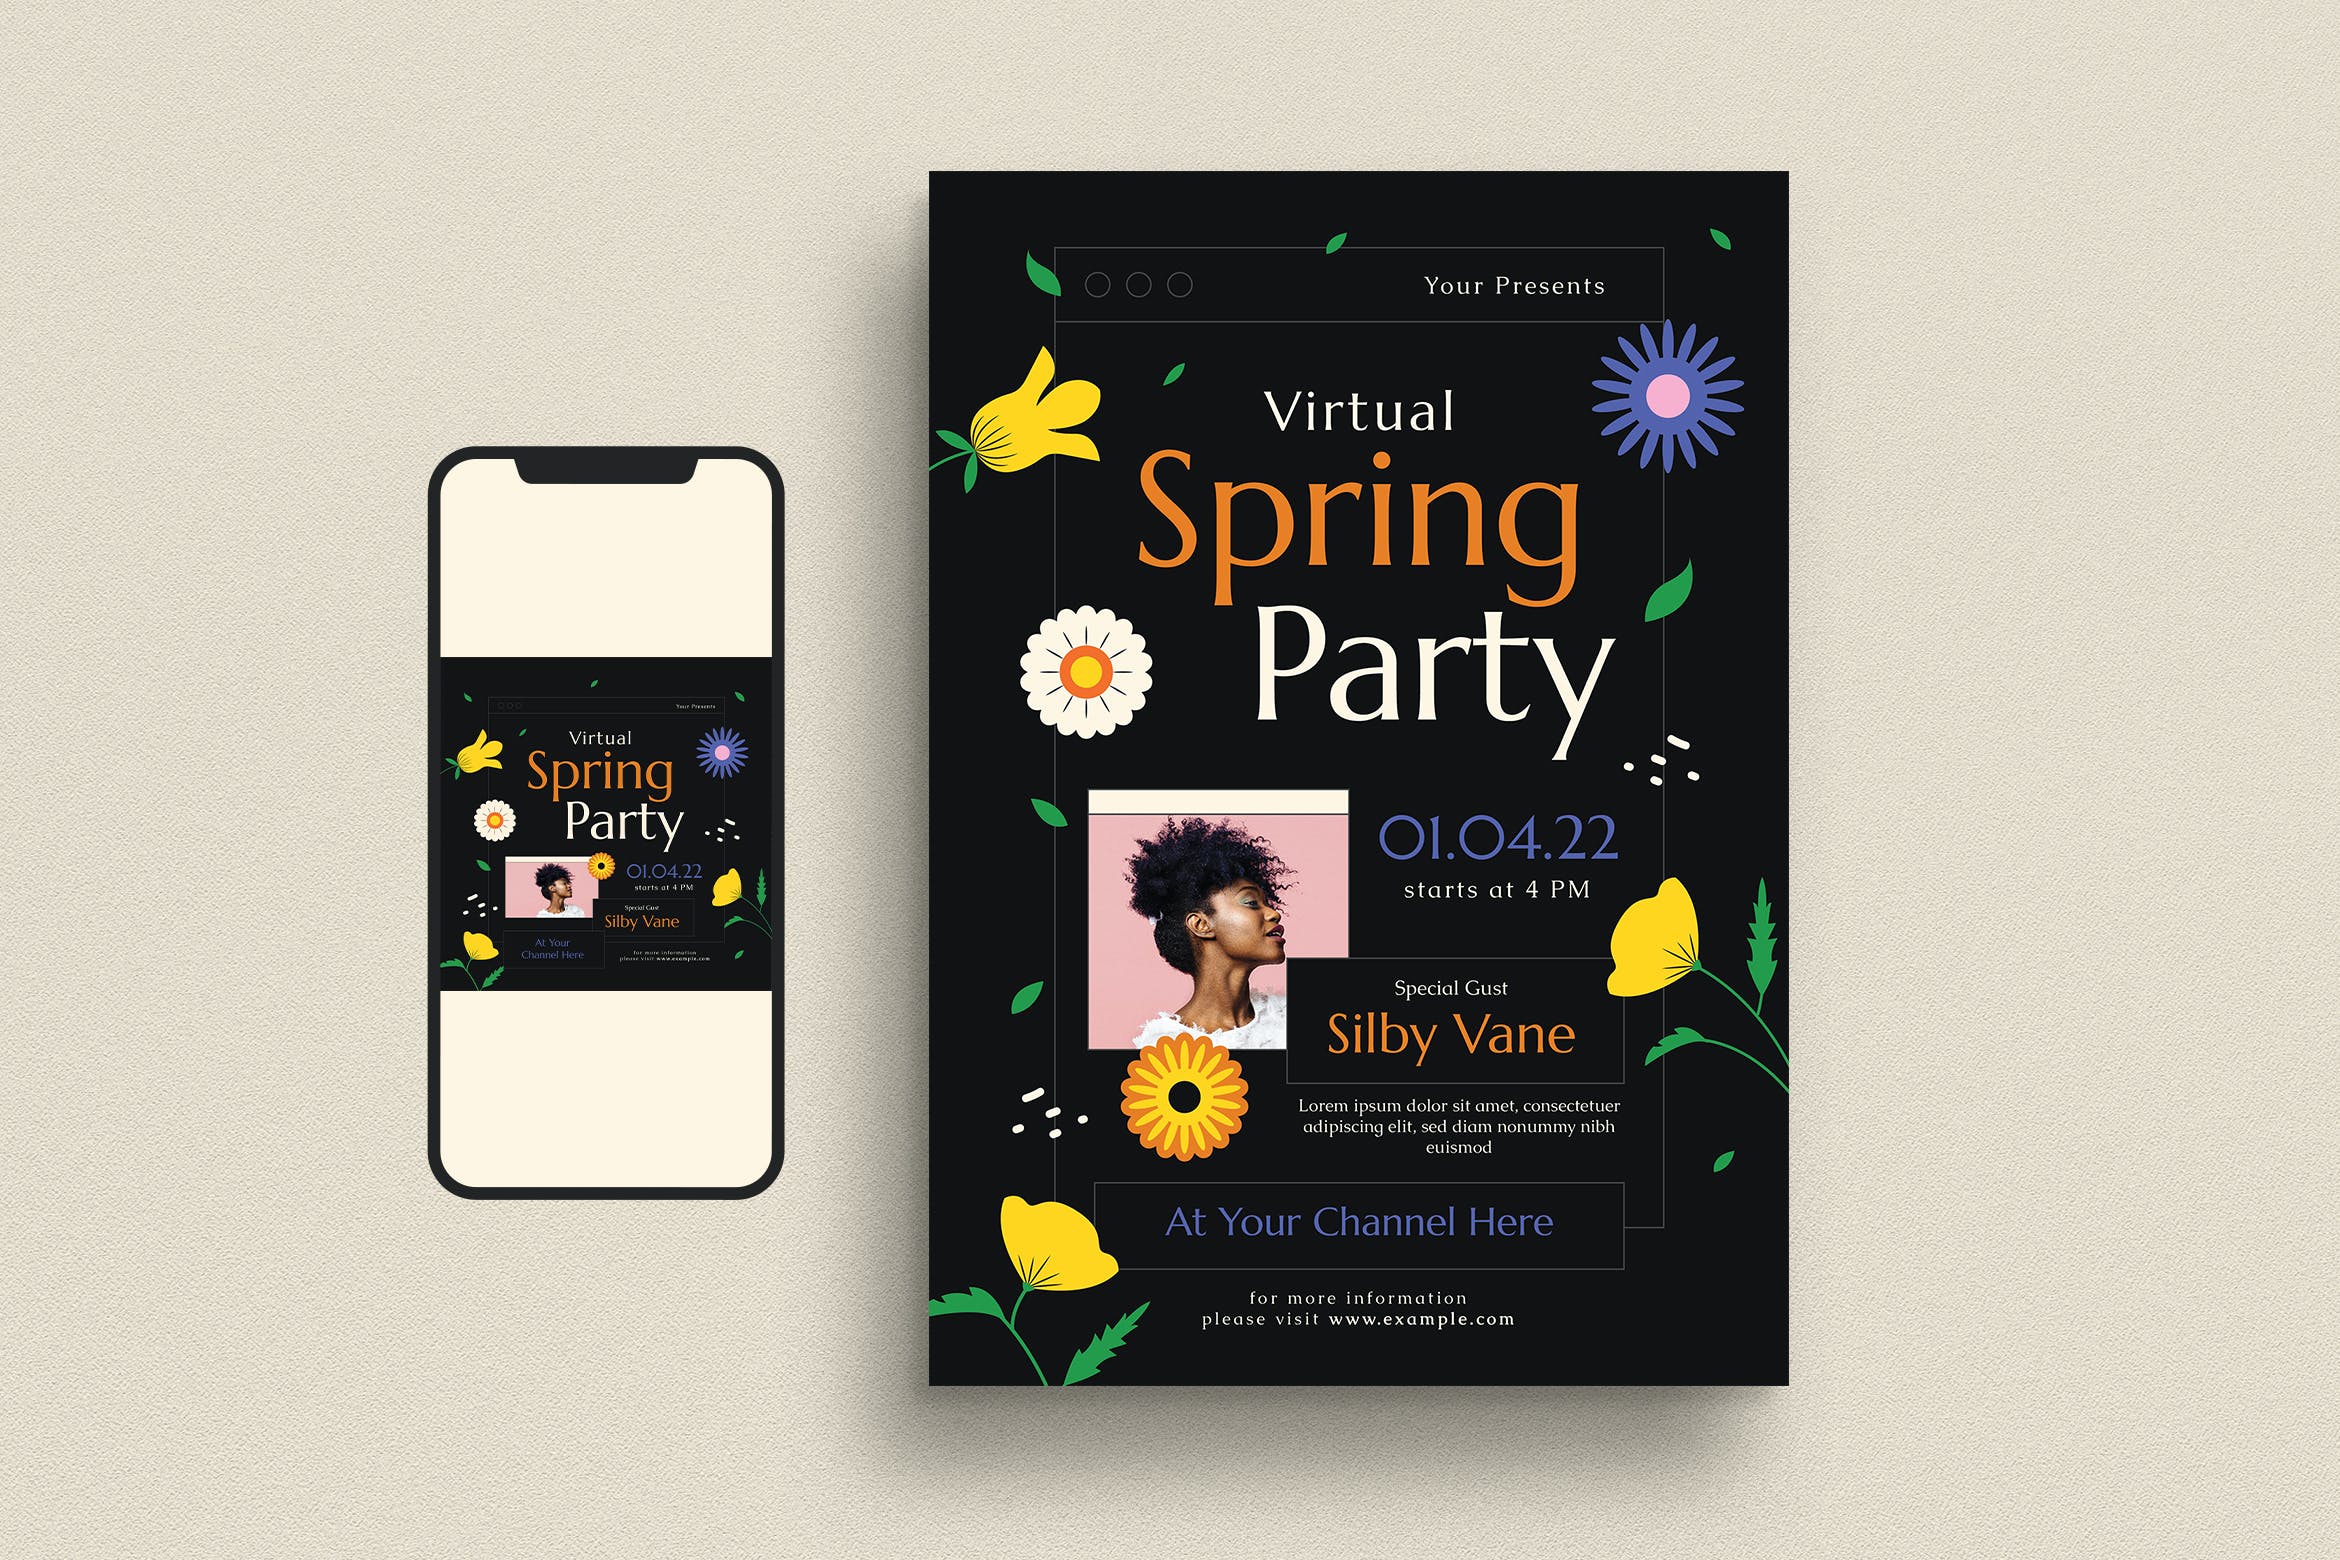 春季派对活动宣传单模板 Virtual Spring Party Event Flyer Set 设计素材 第1张